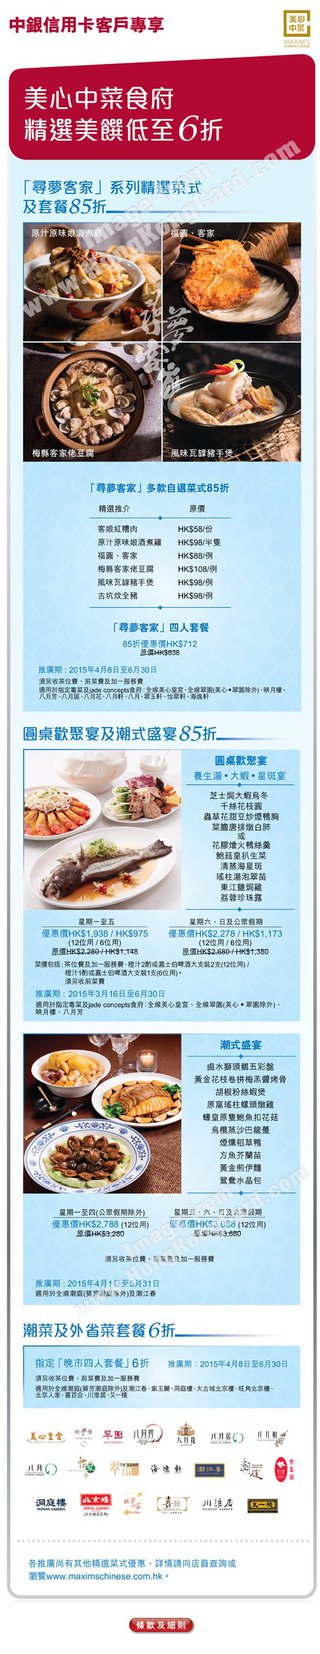 中銀信用卡客戶專享美心中菜食府精選美饌低至6折